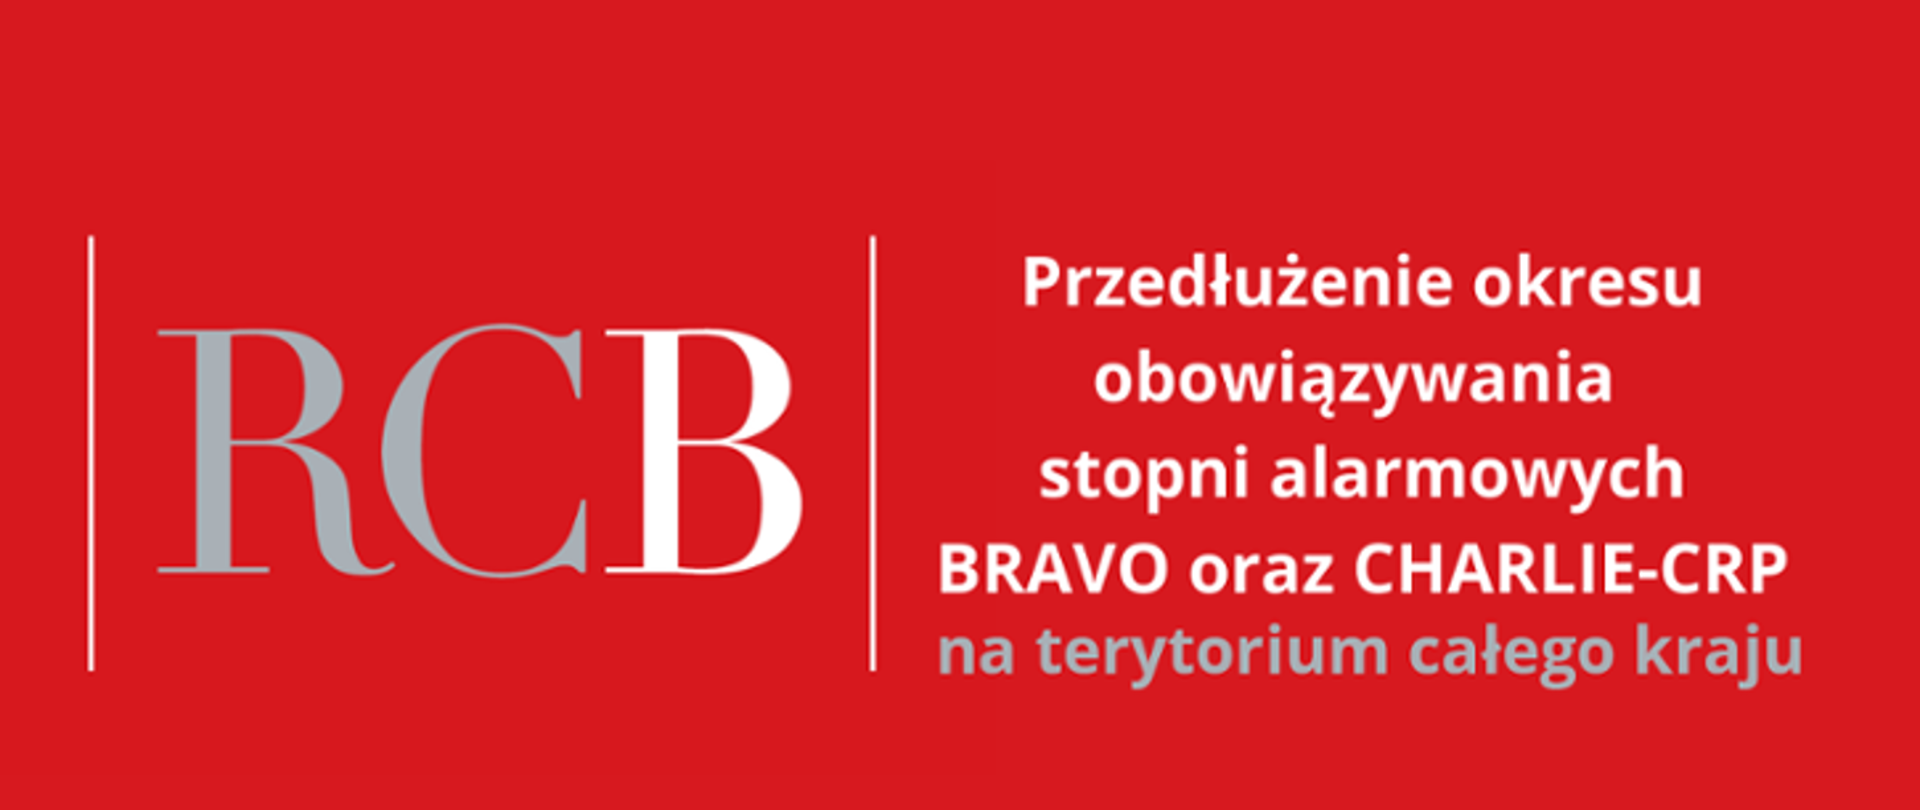 Na czerwonym tle po lewej stronie szaro-biały napis RCB, po prawej stronie napis Przedłużenie obowiązywania stopni alarmowych BRAVO oraz CHARLIE-CRP na terytorium całego kraju.